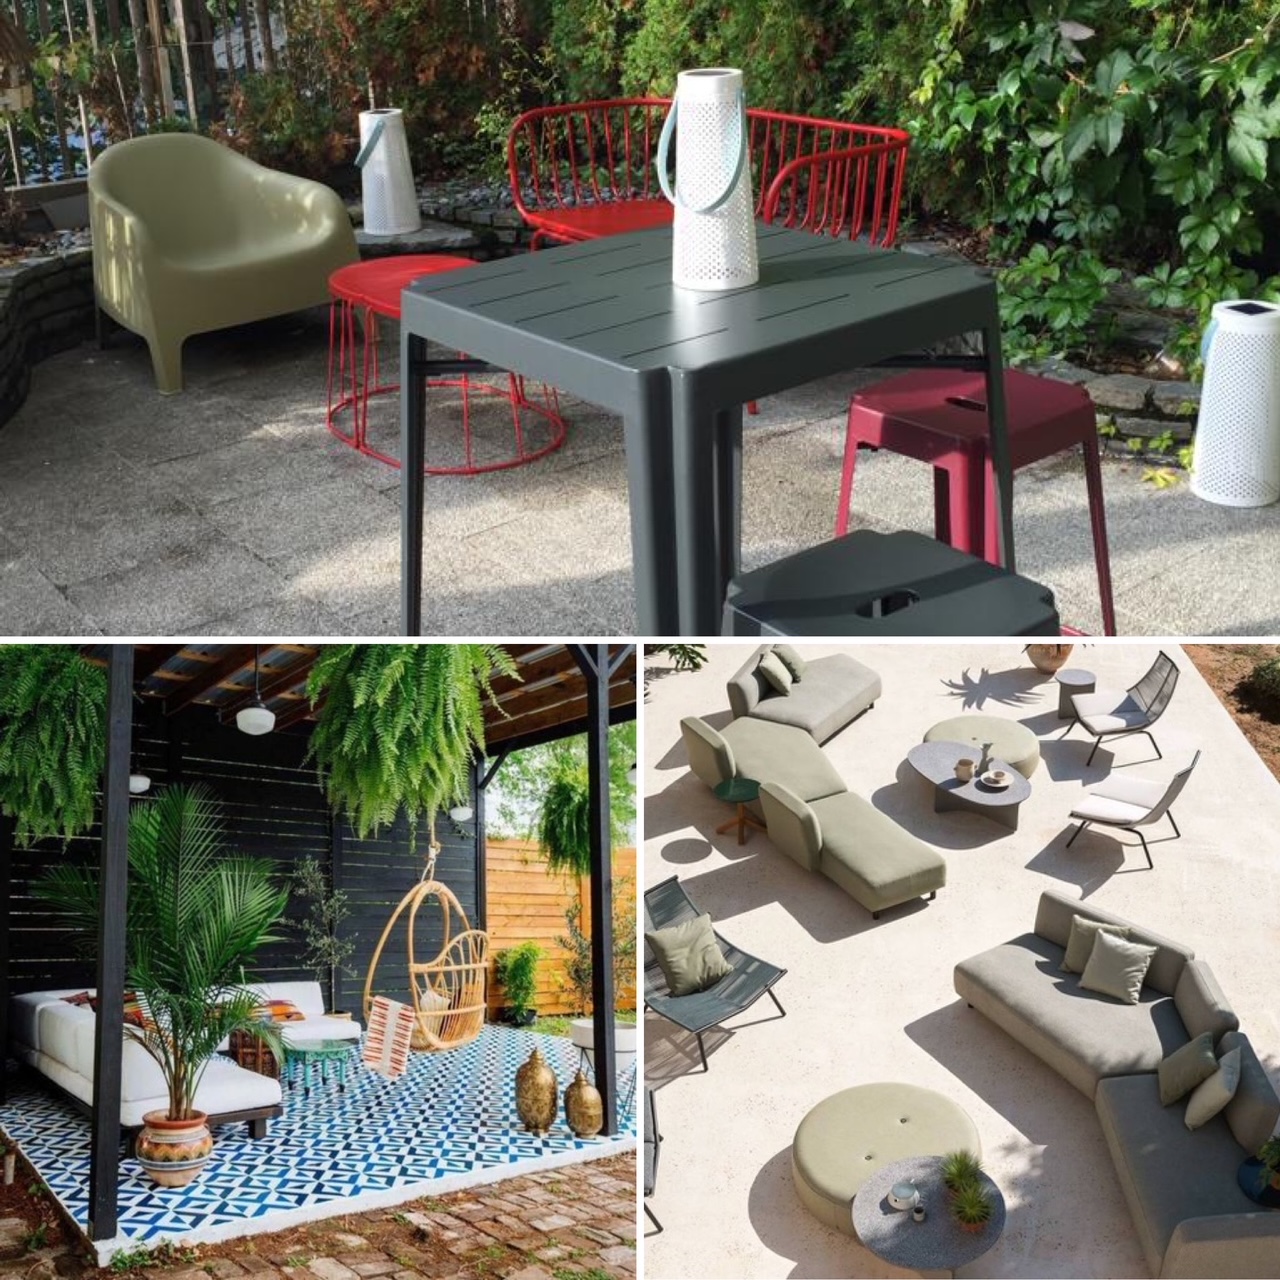 le mobilier modulable pour la terrasse, une idée pratique!